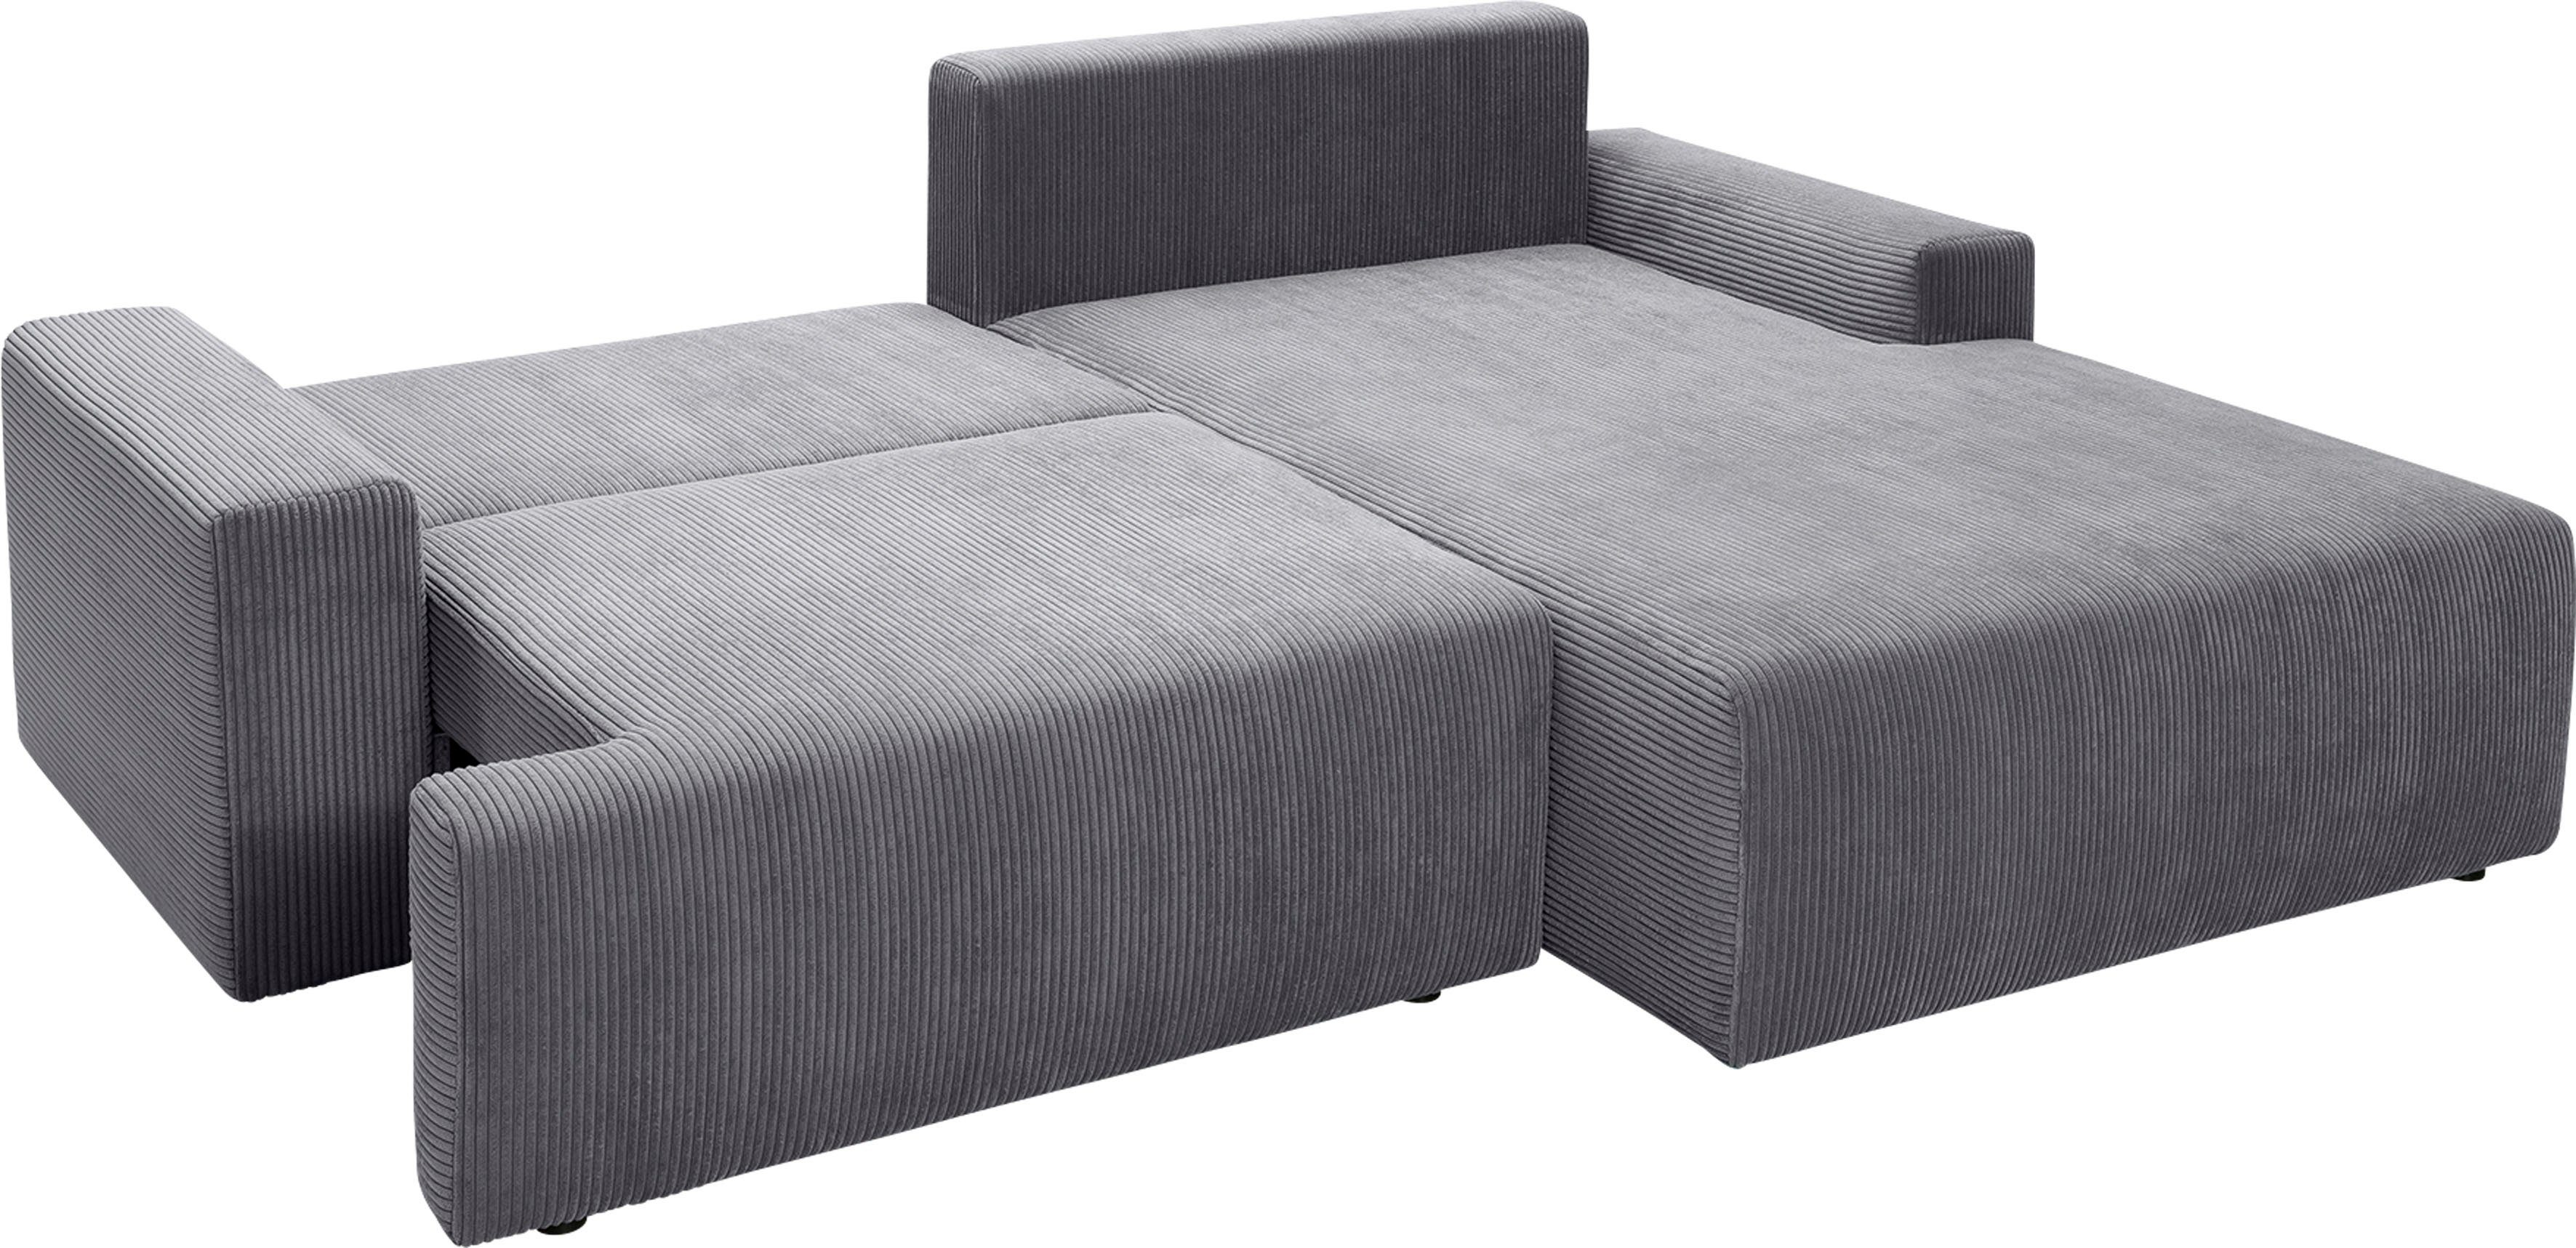 Bettfunktion exxpo fashion Cord-Farben verschiedenen - sofa in und Orinoko, Bettkasten grey Ecksofa inklusive